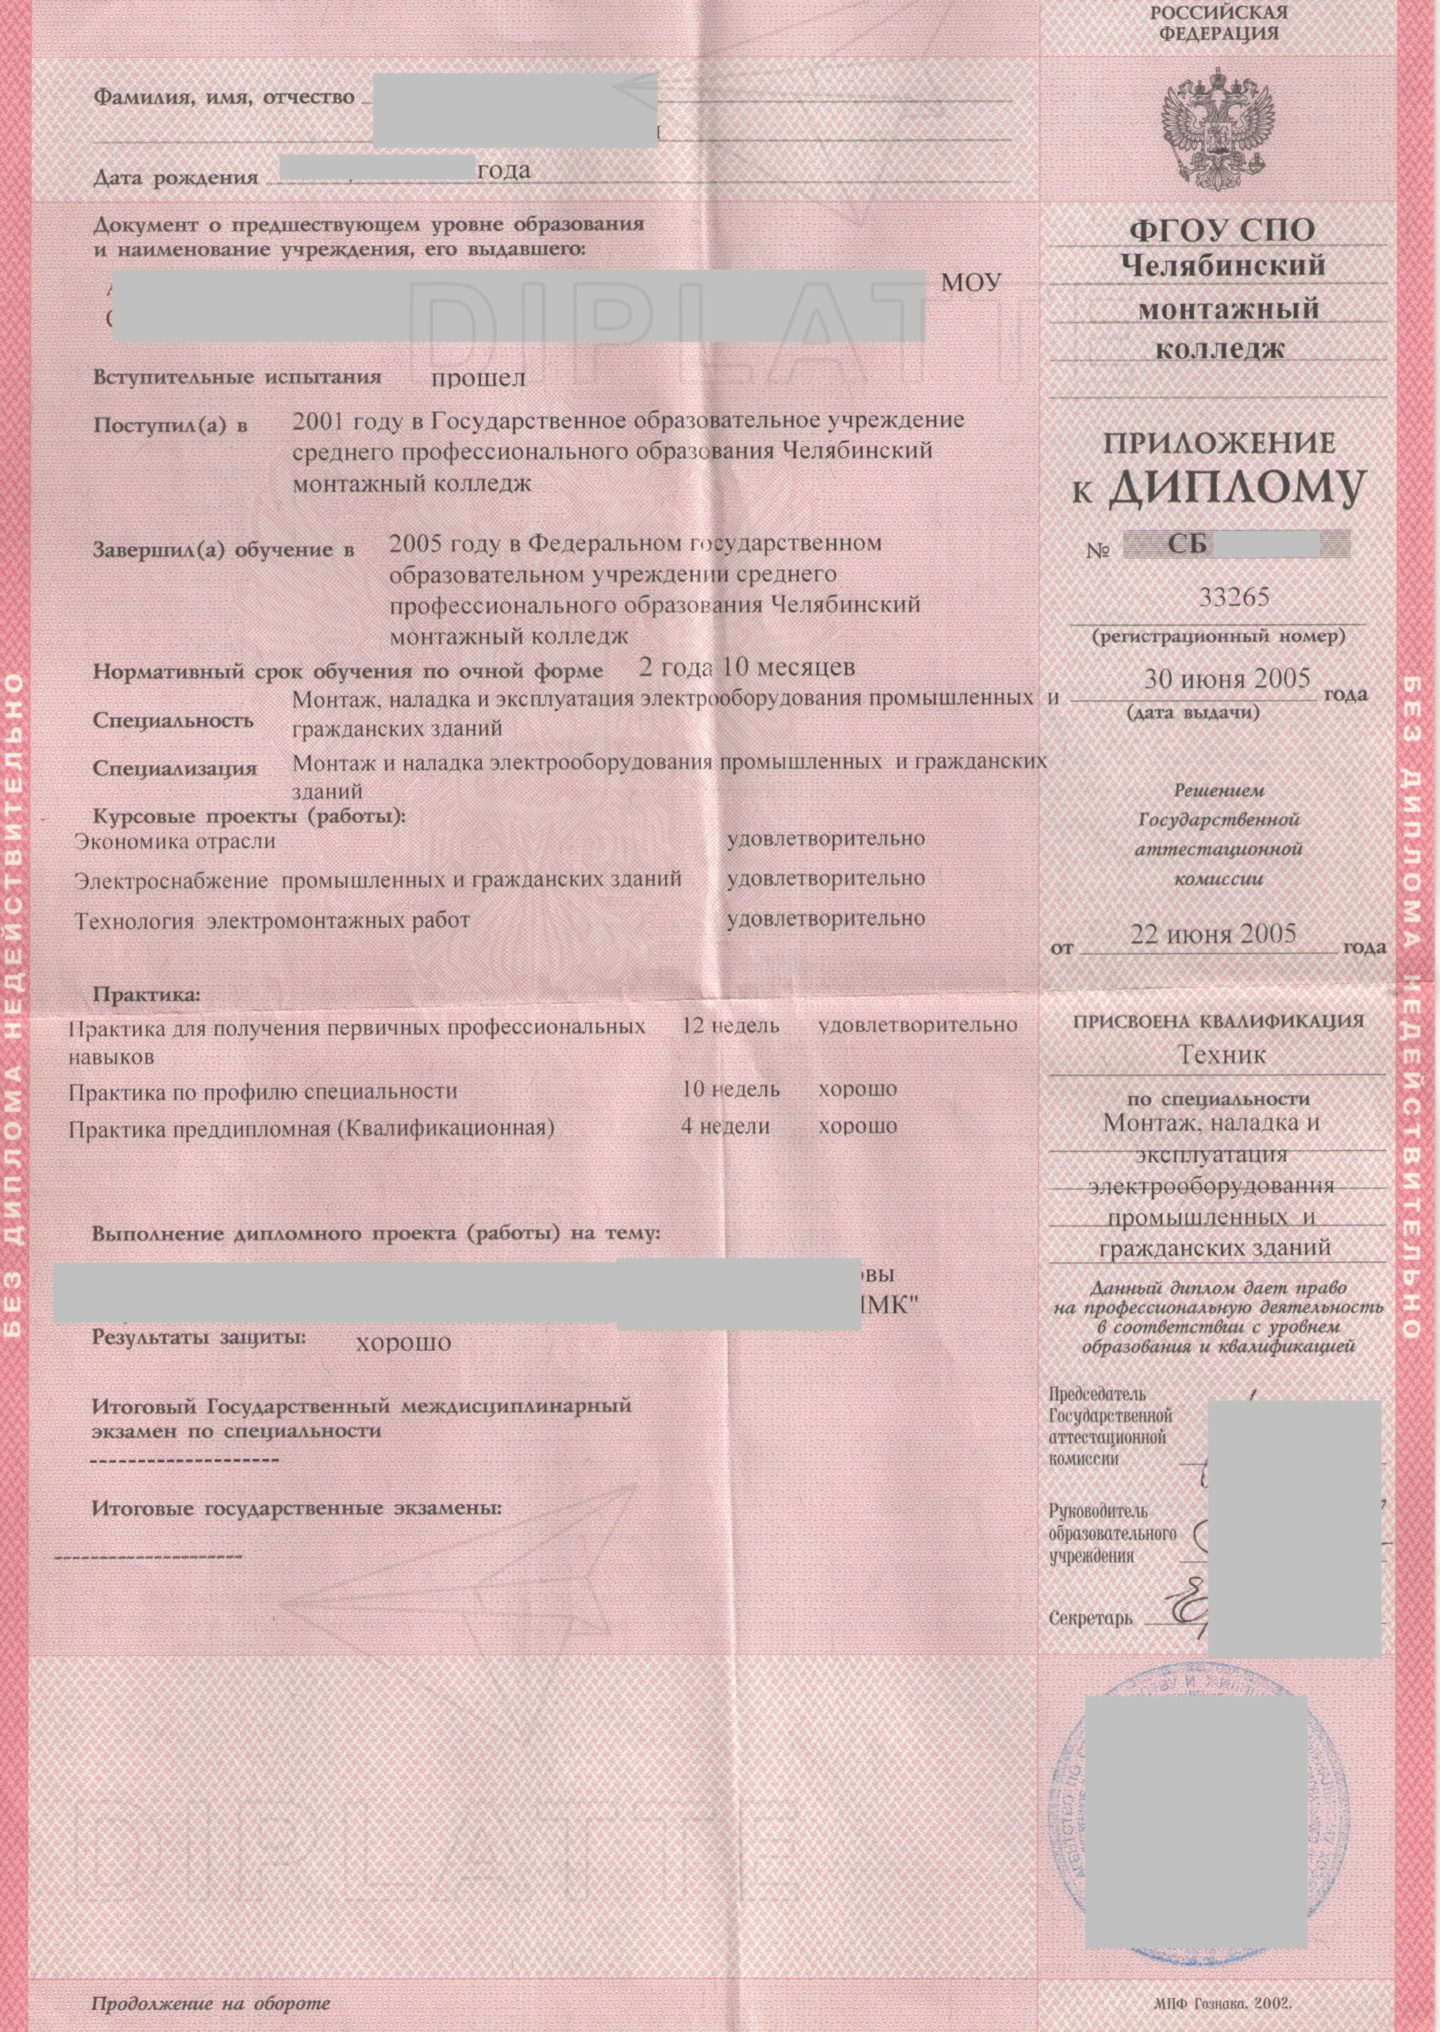 Приложение диплома Челябинского монтажного колледжа 2005 года выдачи